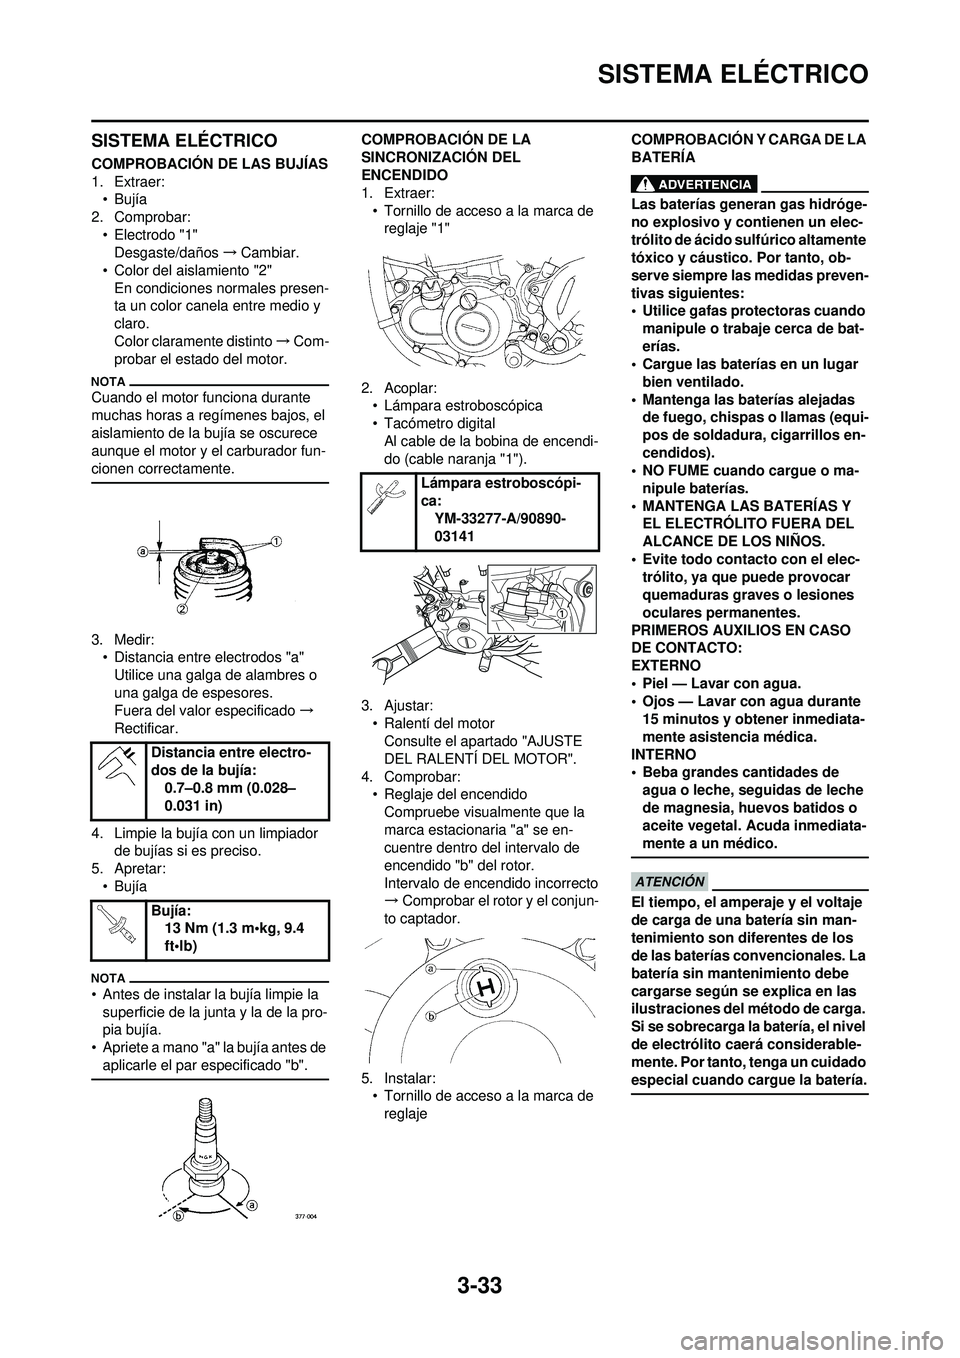 YAMAHA WR 250F 2010  Manuale de Empleo (in Spanish) 3-33
SISTEMA ELÉCTRICO
SISTEMA ELÉCTRICO
COMPROBACIÓN DE LAS BUJÍAS
1. Extraer:•Bujía
2. Comprobar:
• Electrodo "1"Desgaste/daños →Cambiar.
• Color del aislamiento "2"
En condiciones nor